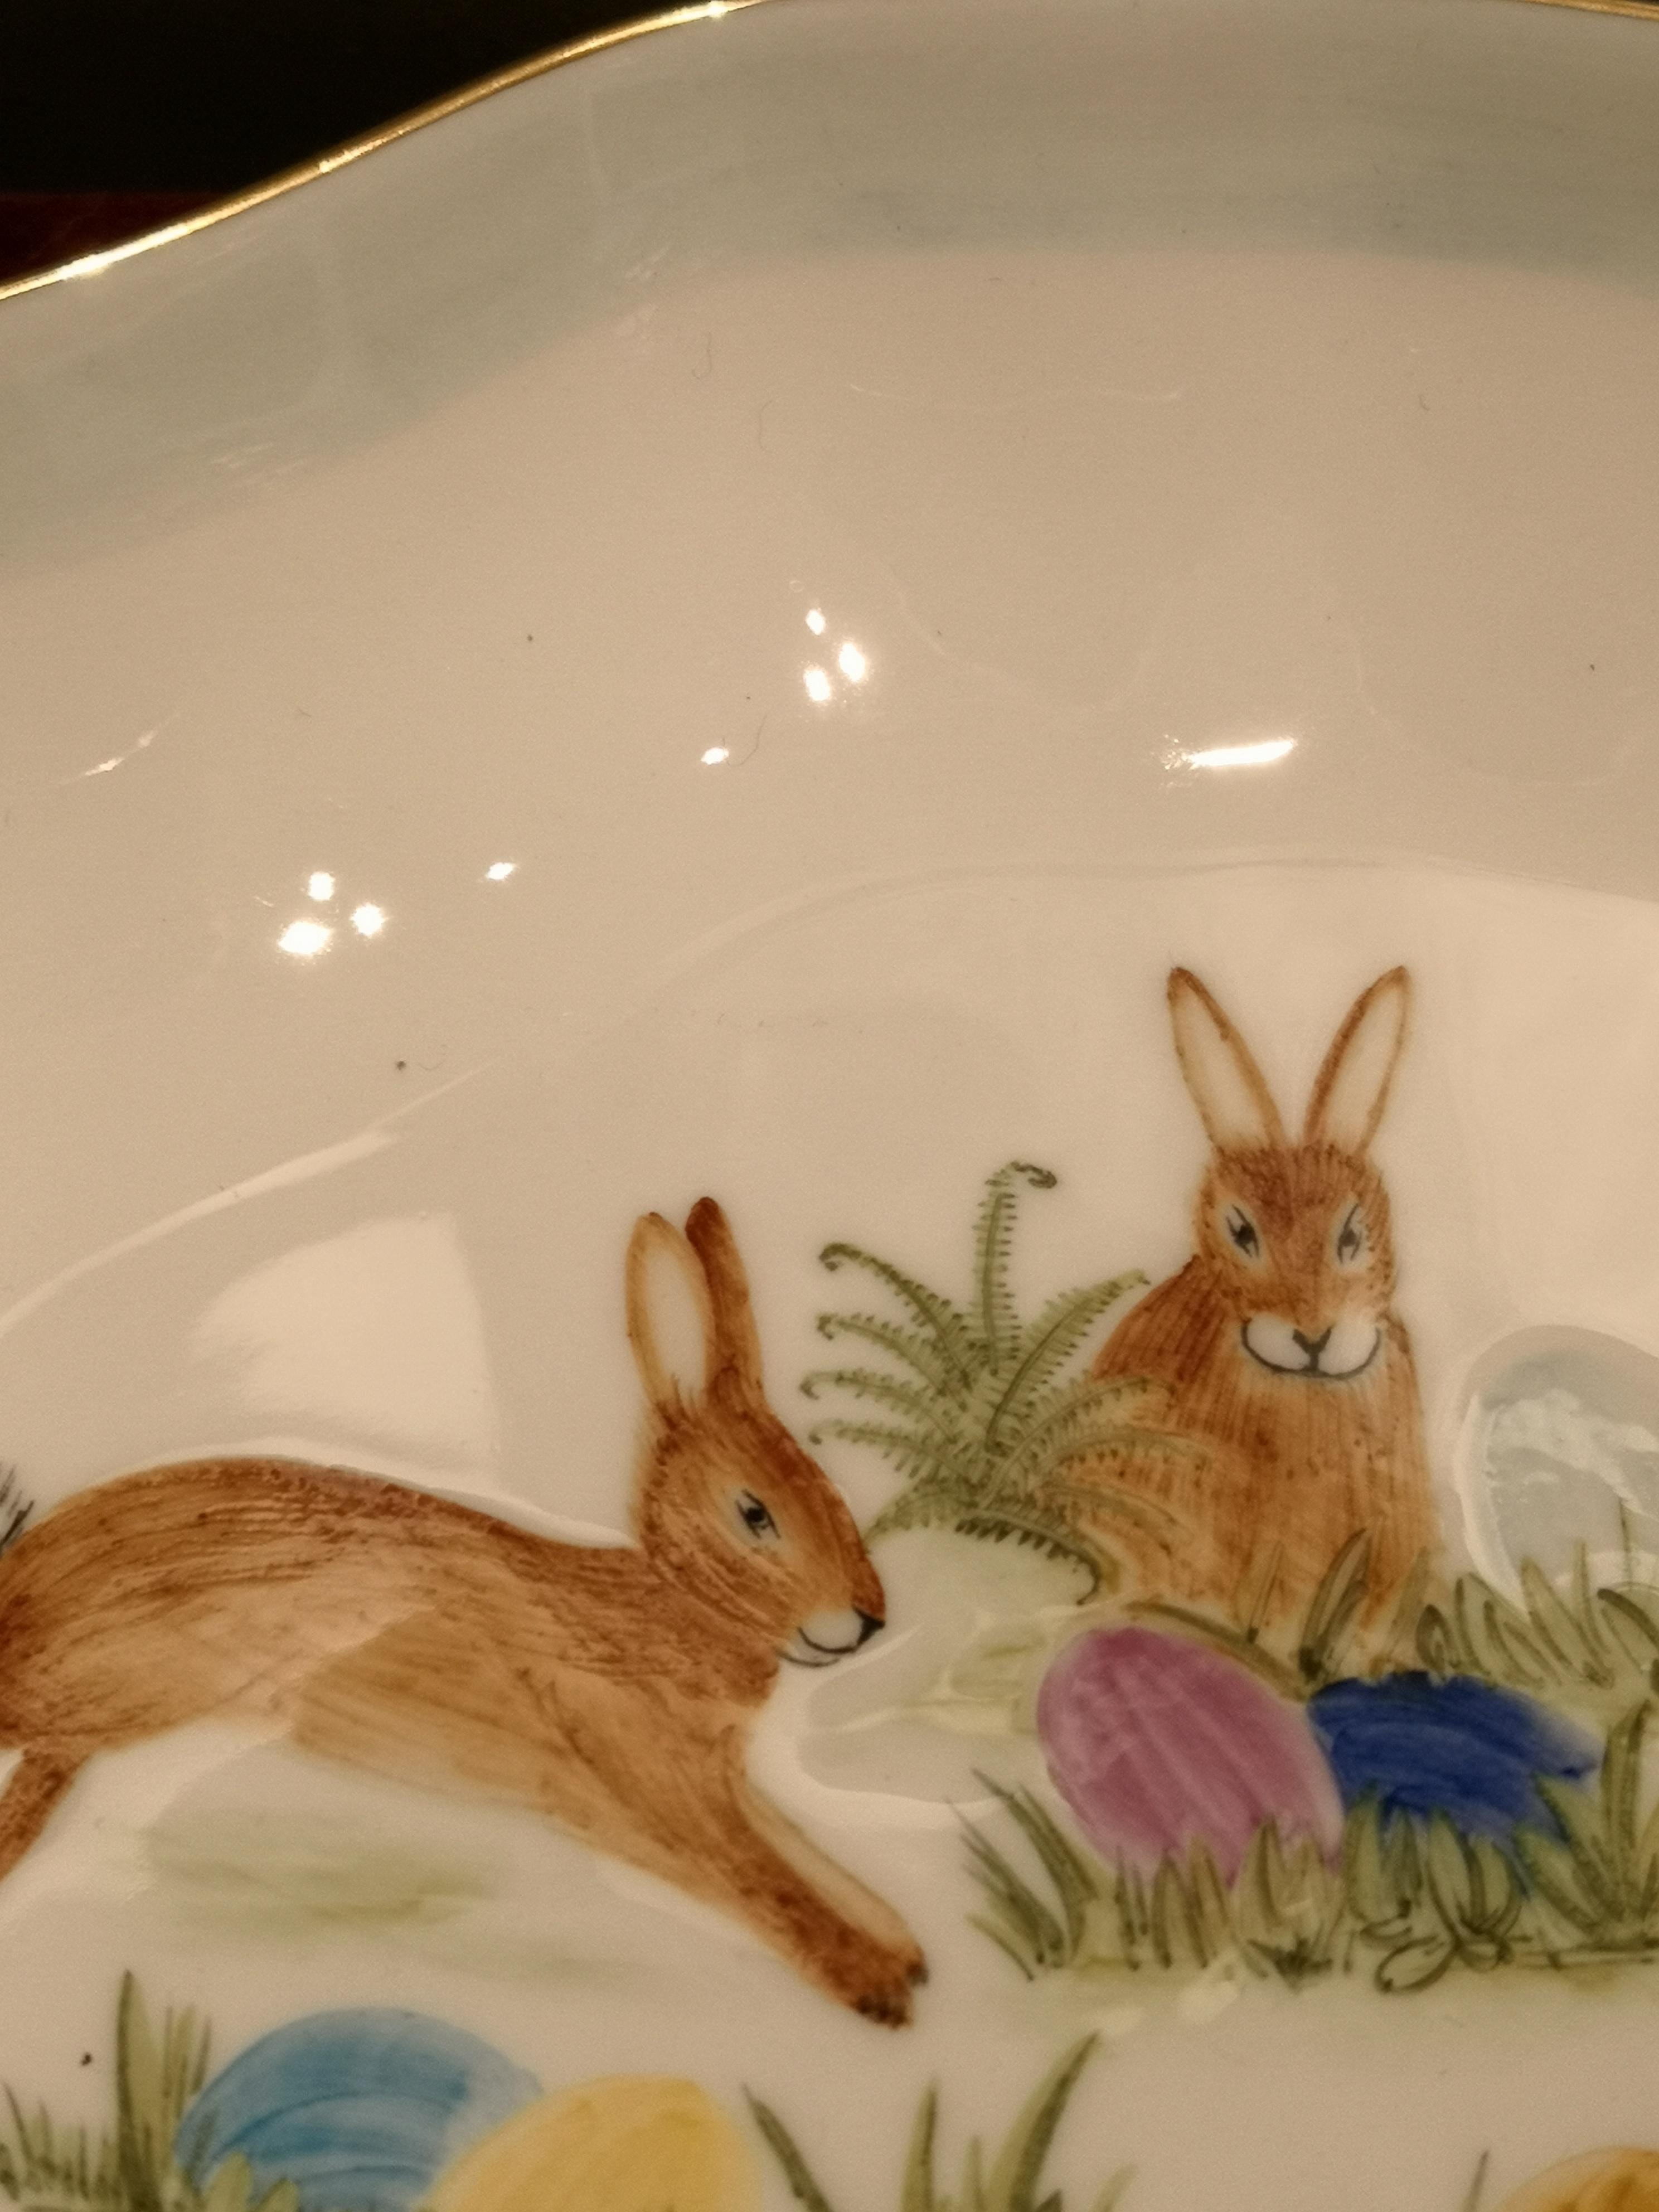 Ce plat à pâtisserie en porcelaine entièrement fait à la main est peint à la main avec un charmant décor de Pâques avec des lapins et des œufs colorés. Bordé à la main d'une fine ligne d'or 24 carats. Fabriqué à la main en Bavière / Allemagne.
À